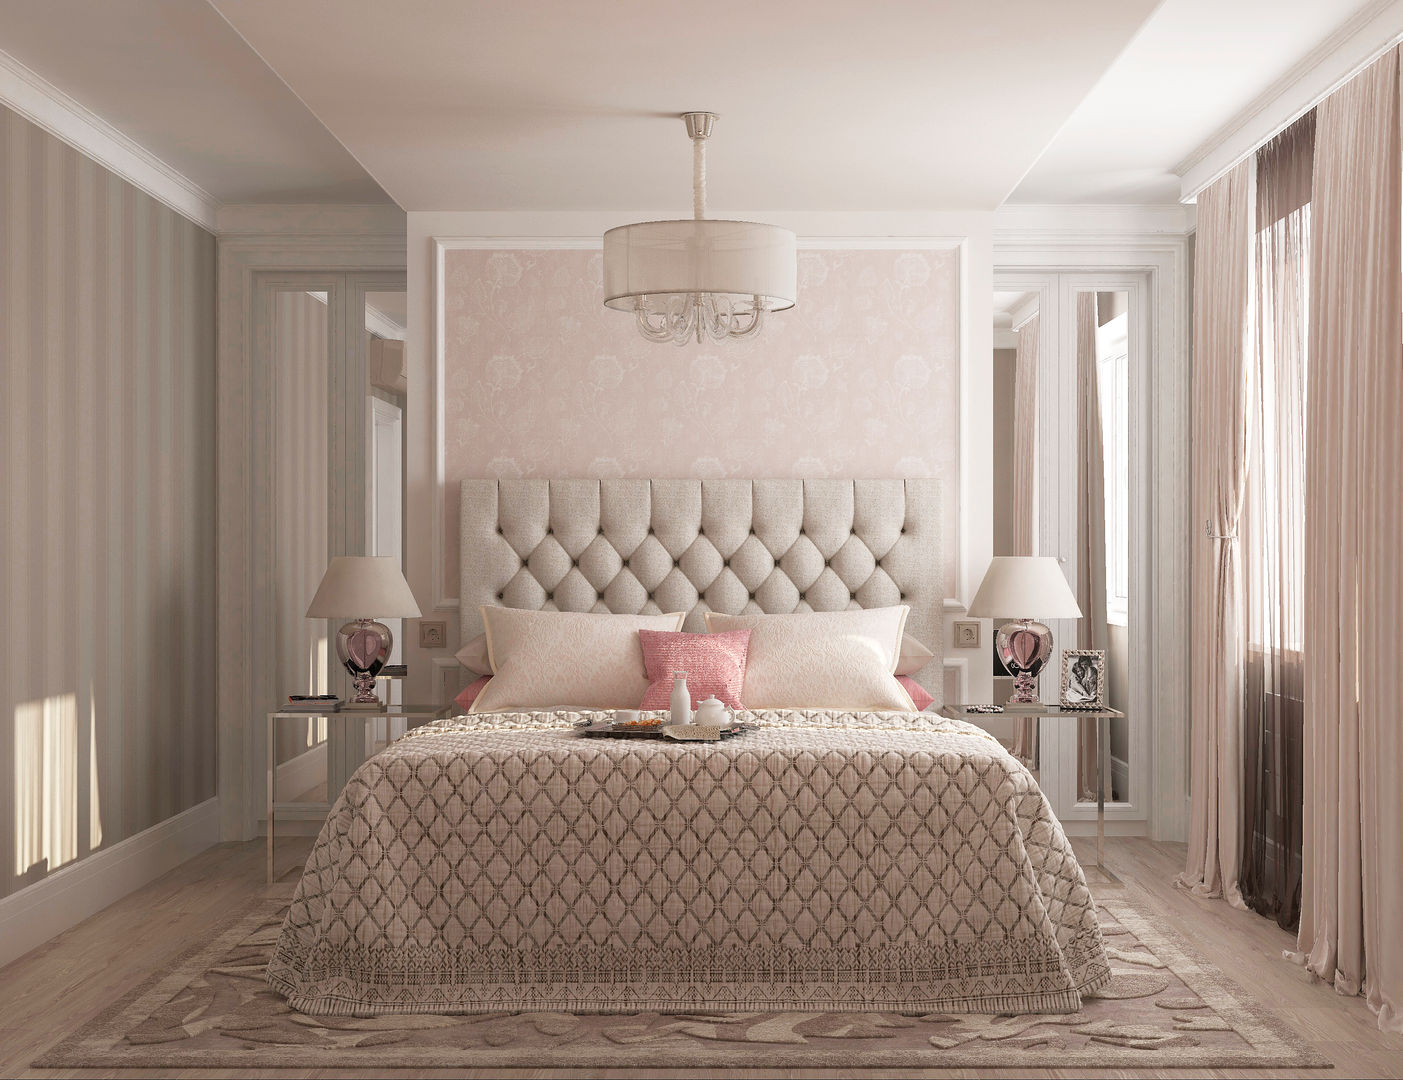 Спальня гостевая "Glamour", Студия дизайна Дарьи Одарюк Студия дизайна Дарьи Одарюк Dormitorios clásicos